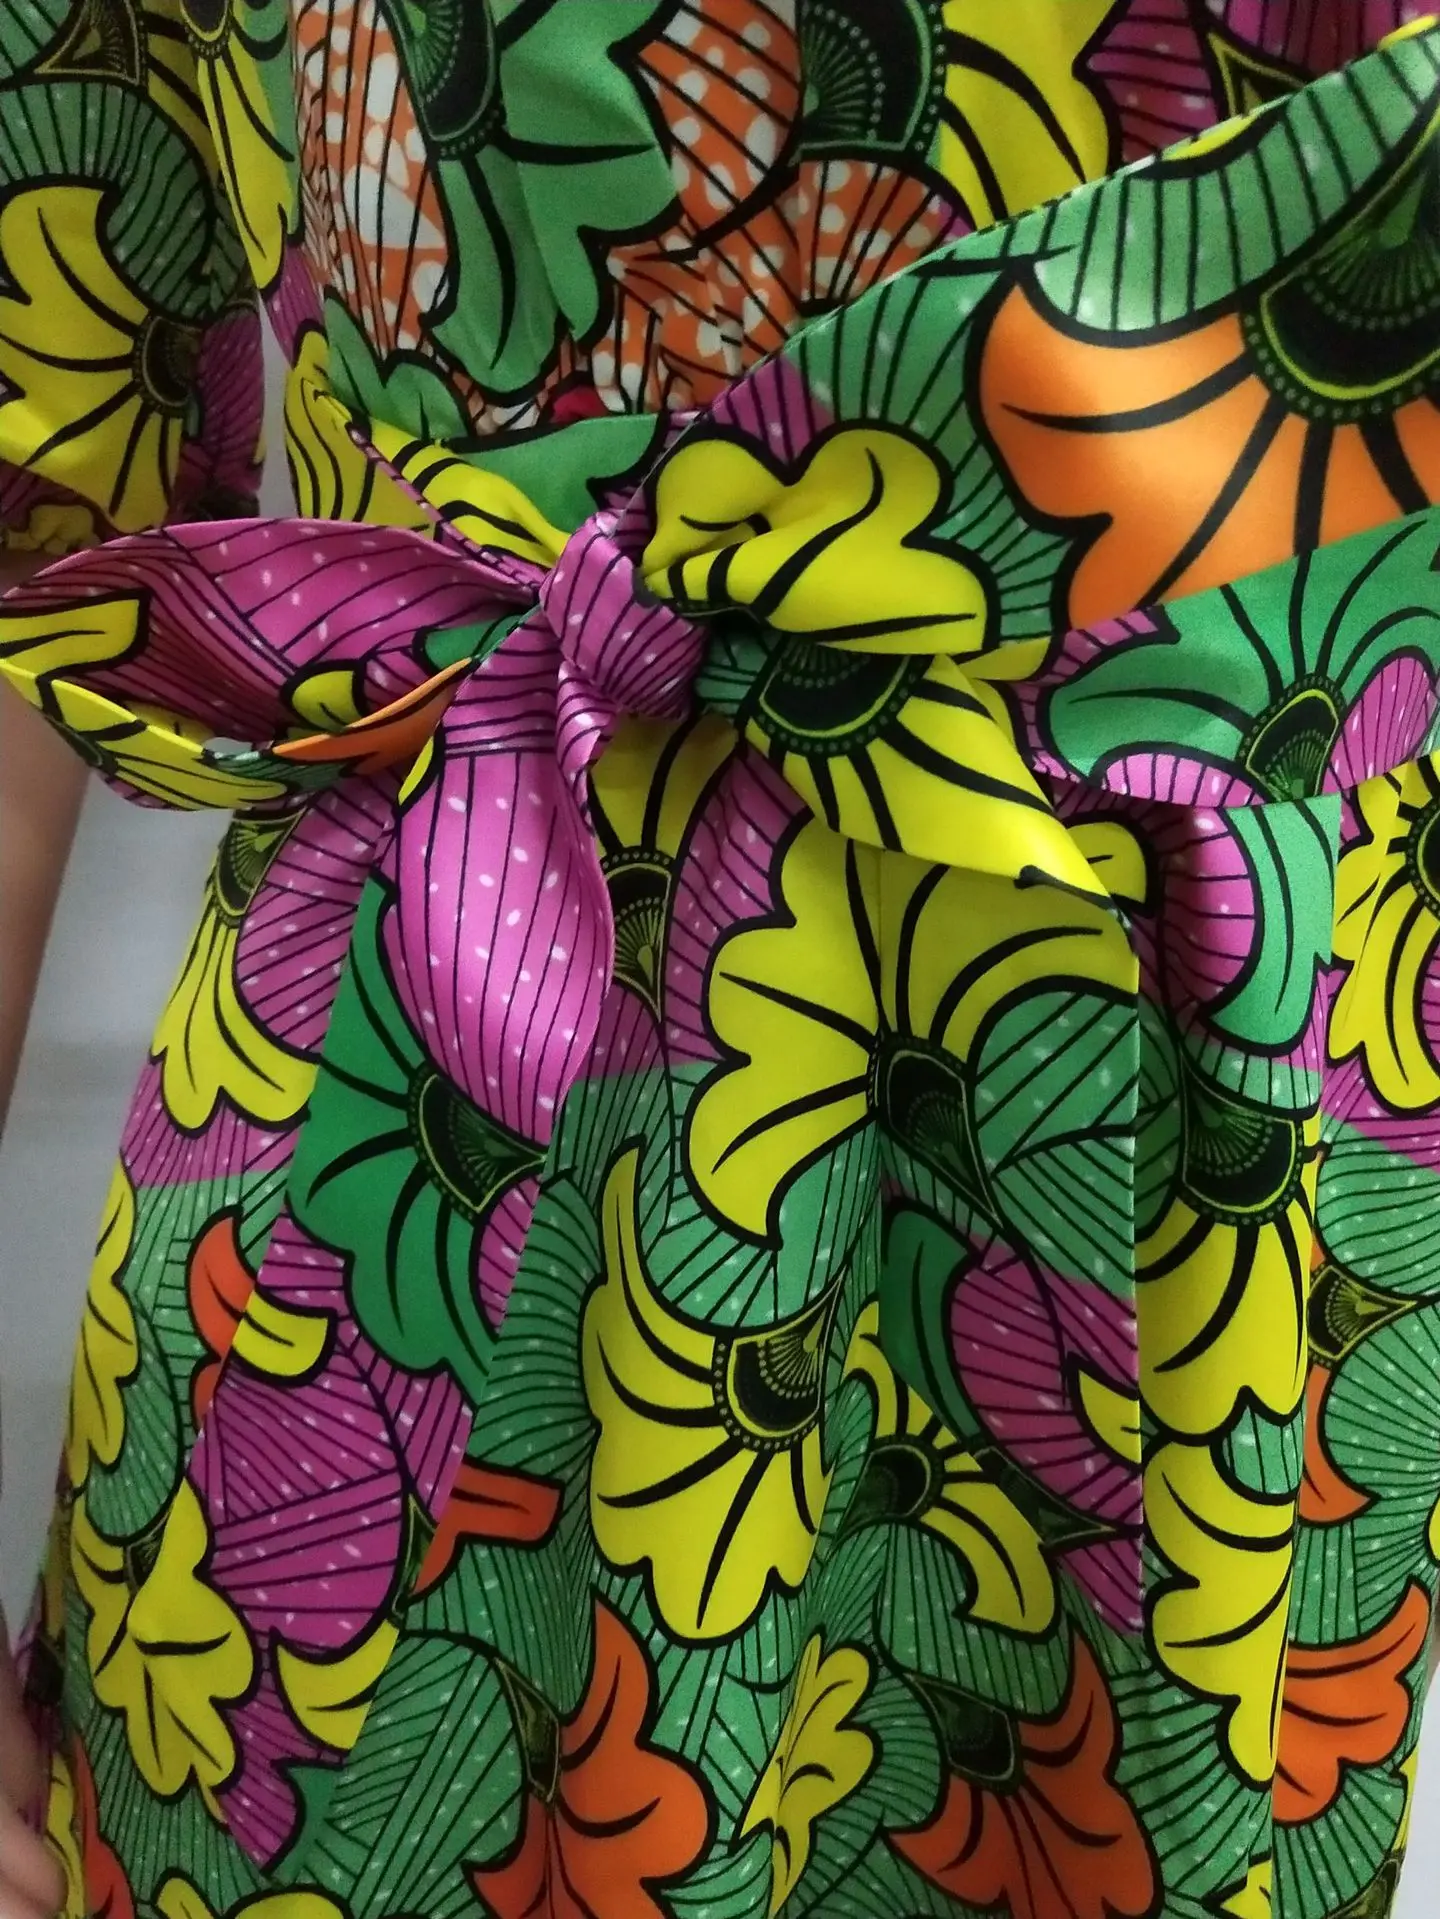 2019 Новое поступление Модная Соблазнительная летняя стиле африканских женщин большие размеры длинные печати платье S-XXL